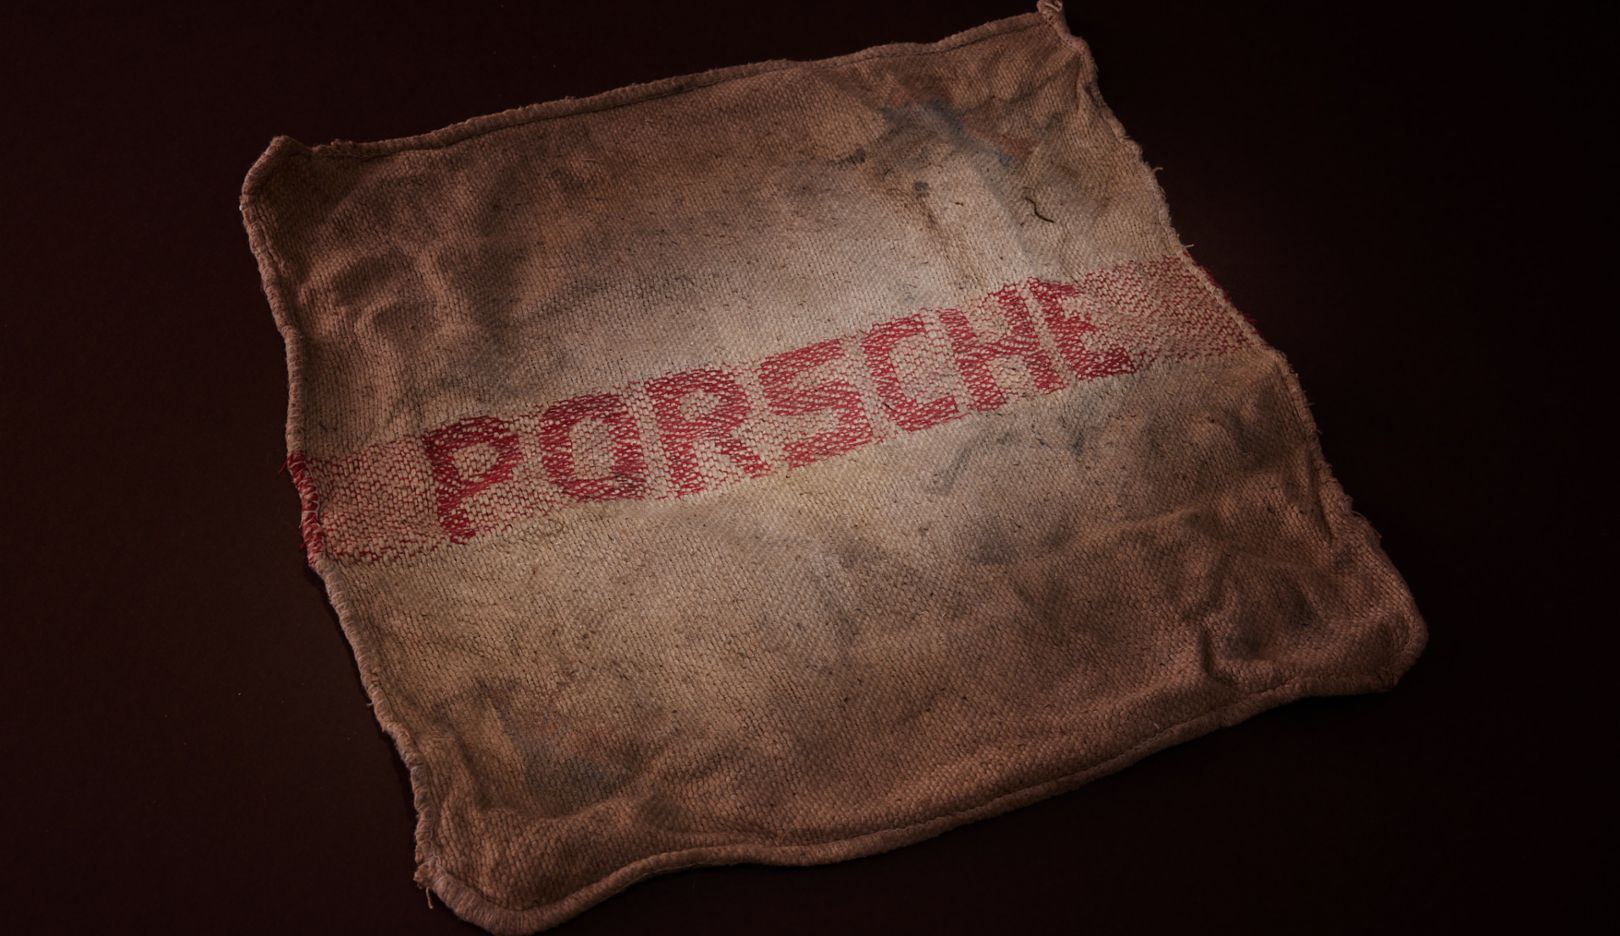 Más de 50 años después, el paño de Porsche sigue oliendo a aceite.